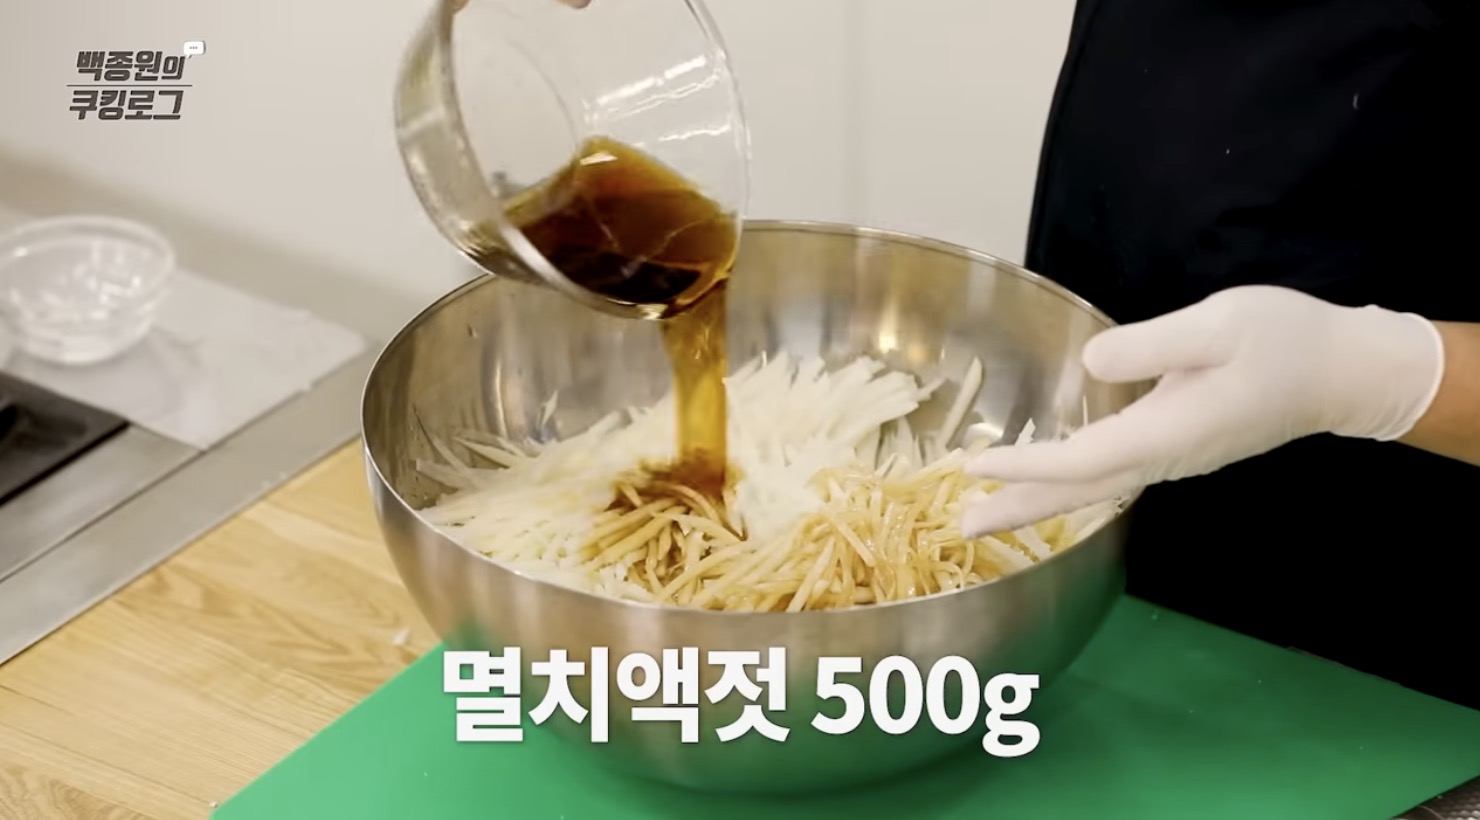 김장김치 맛있게 담는법 채썬 무에 소금 멸치액젓 새우젓을 넣는 모습